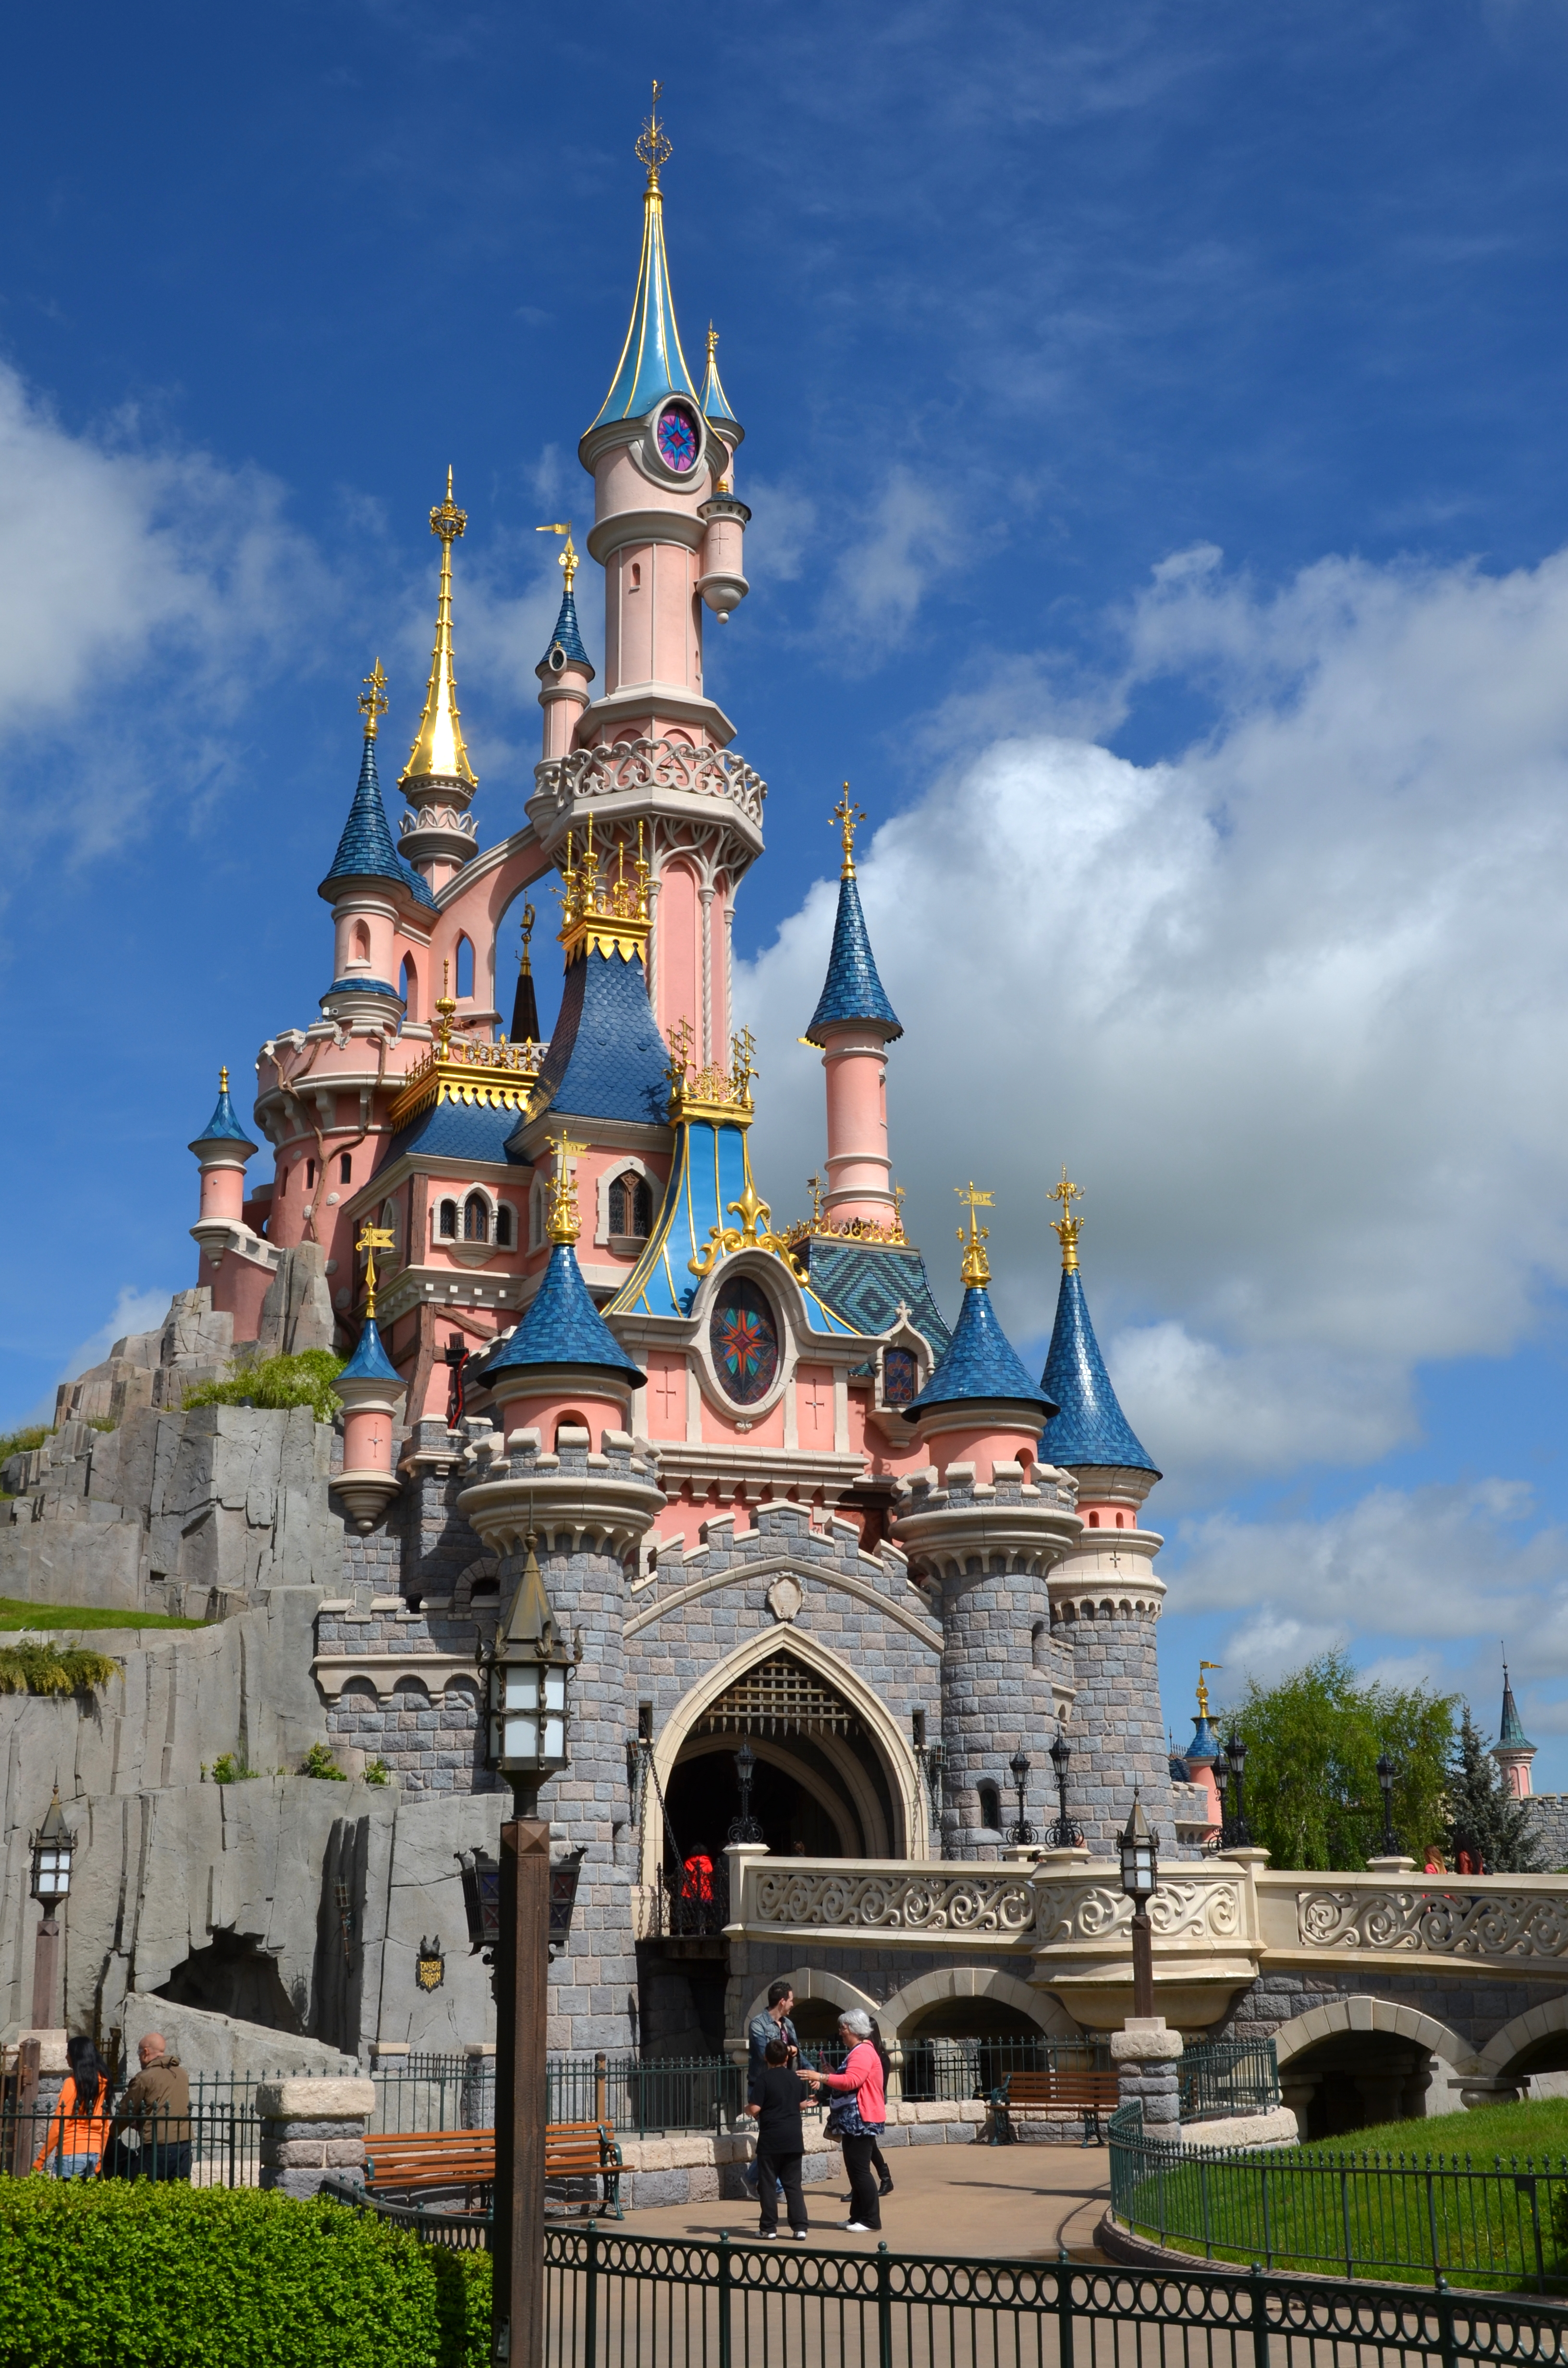 Диснейленд находится в городе. Парк Диснейленд. Где находится Disneyland в Америке. Парк Диснейленд в Америке. Сказочный замок в Диснейленде во Франции.